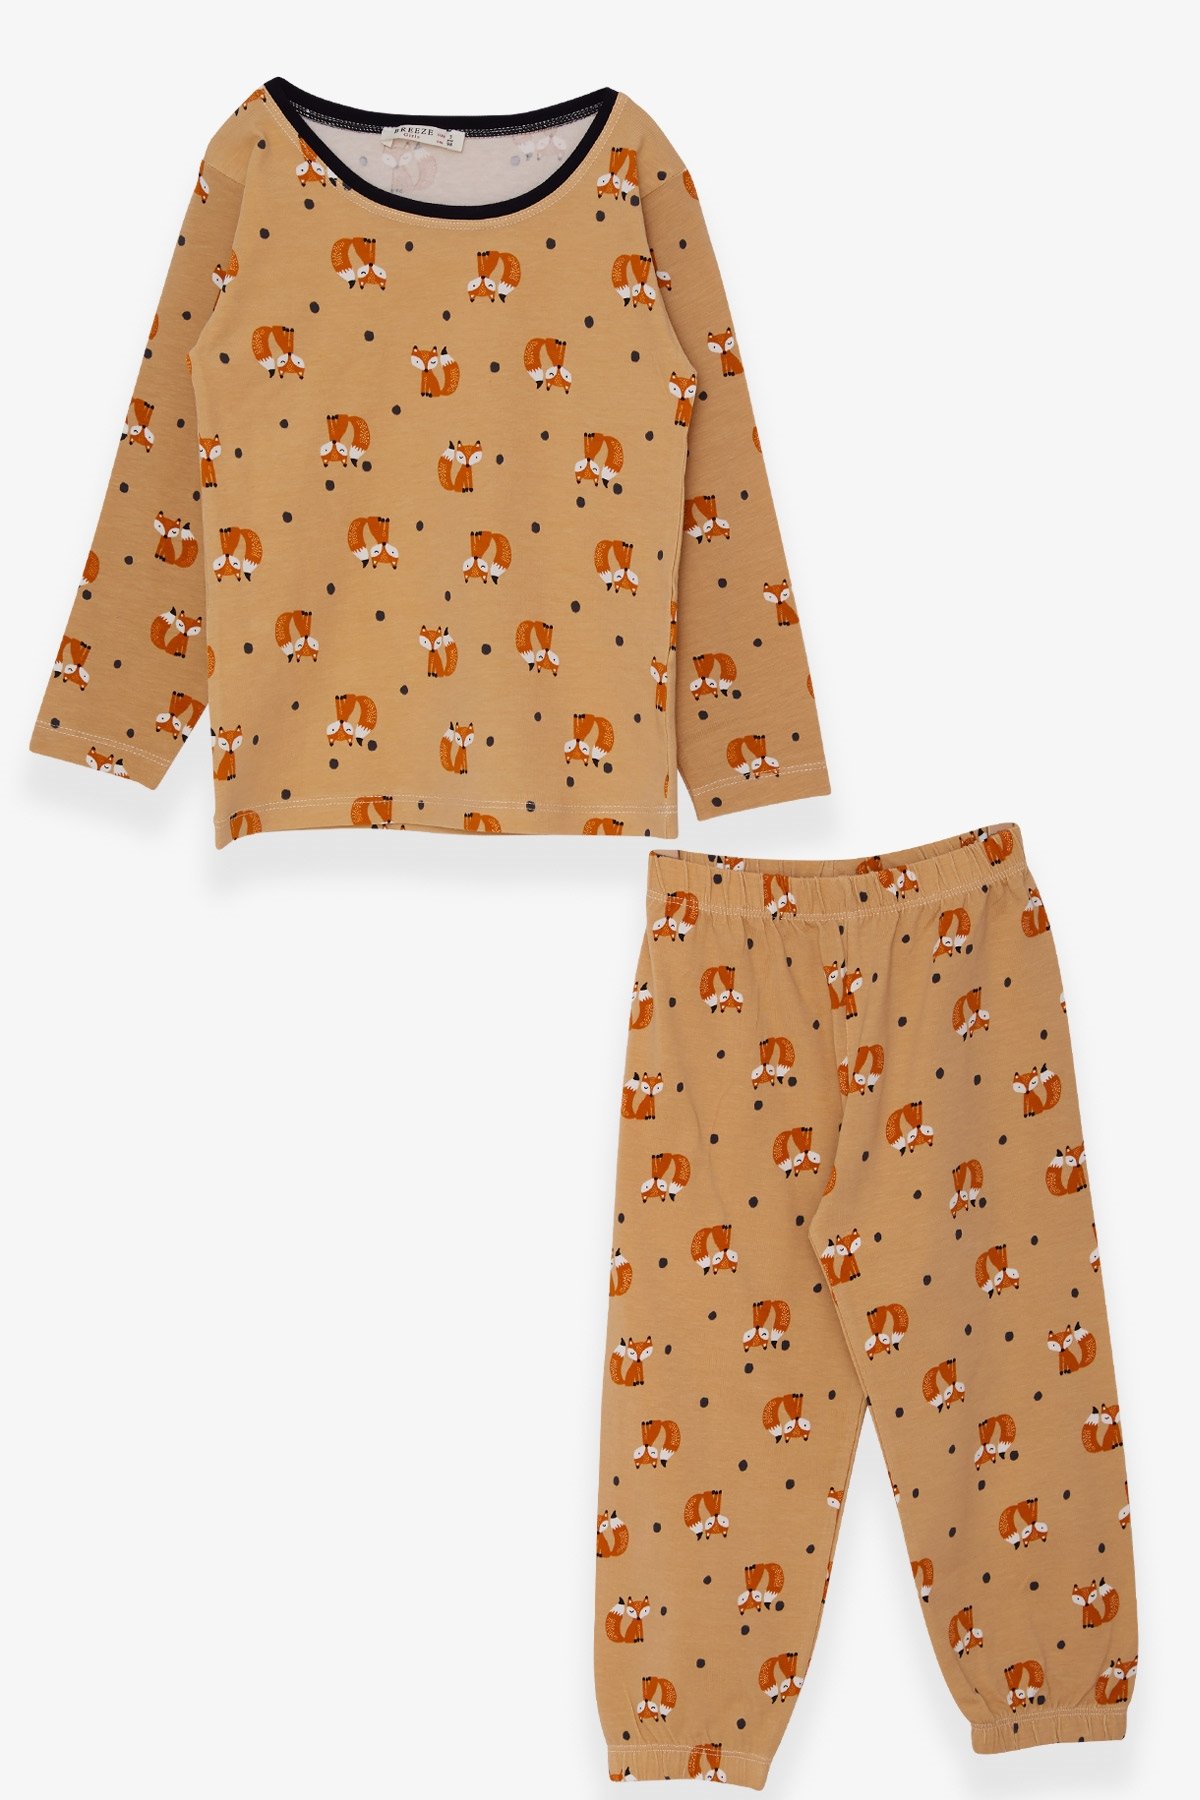 Kız Bebek Pijama Takımı Tilkicik Desenli Açık Kahverengi 9 Ay-1 Yaş -  Eğlenceli Kız Çocuk Pijamaları| Breeze